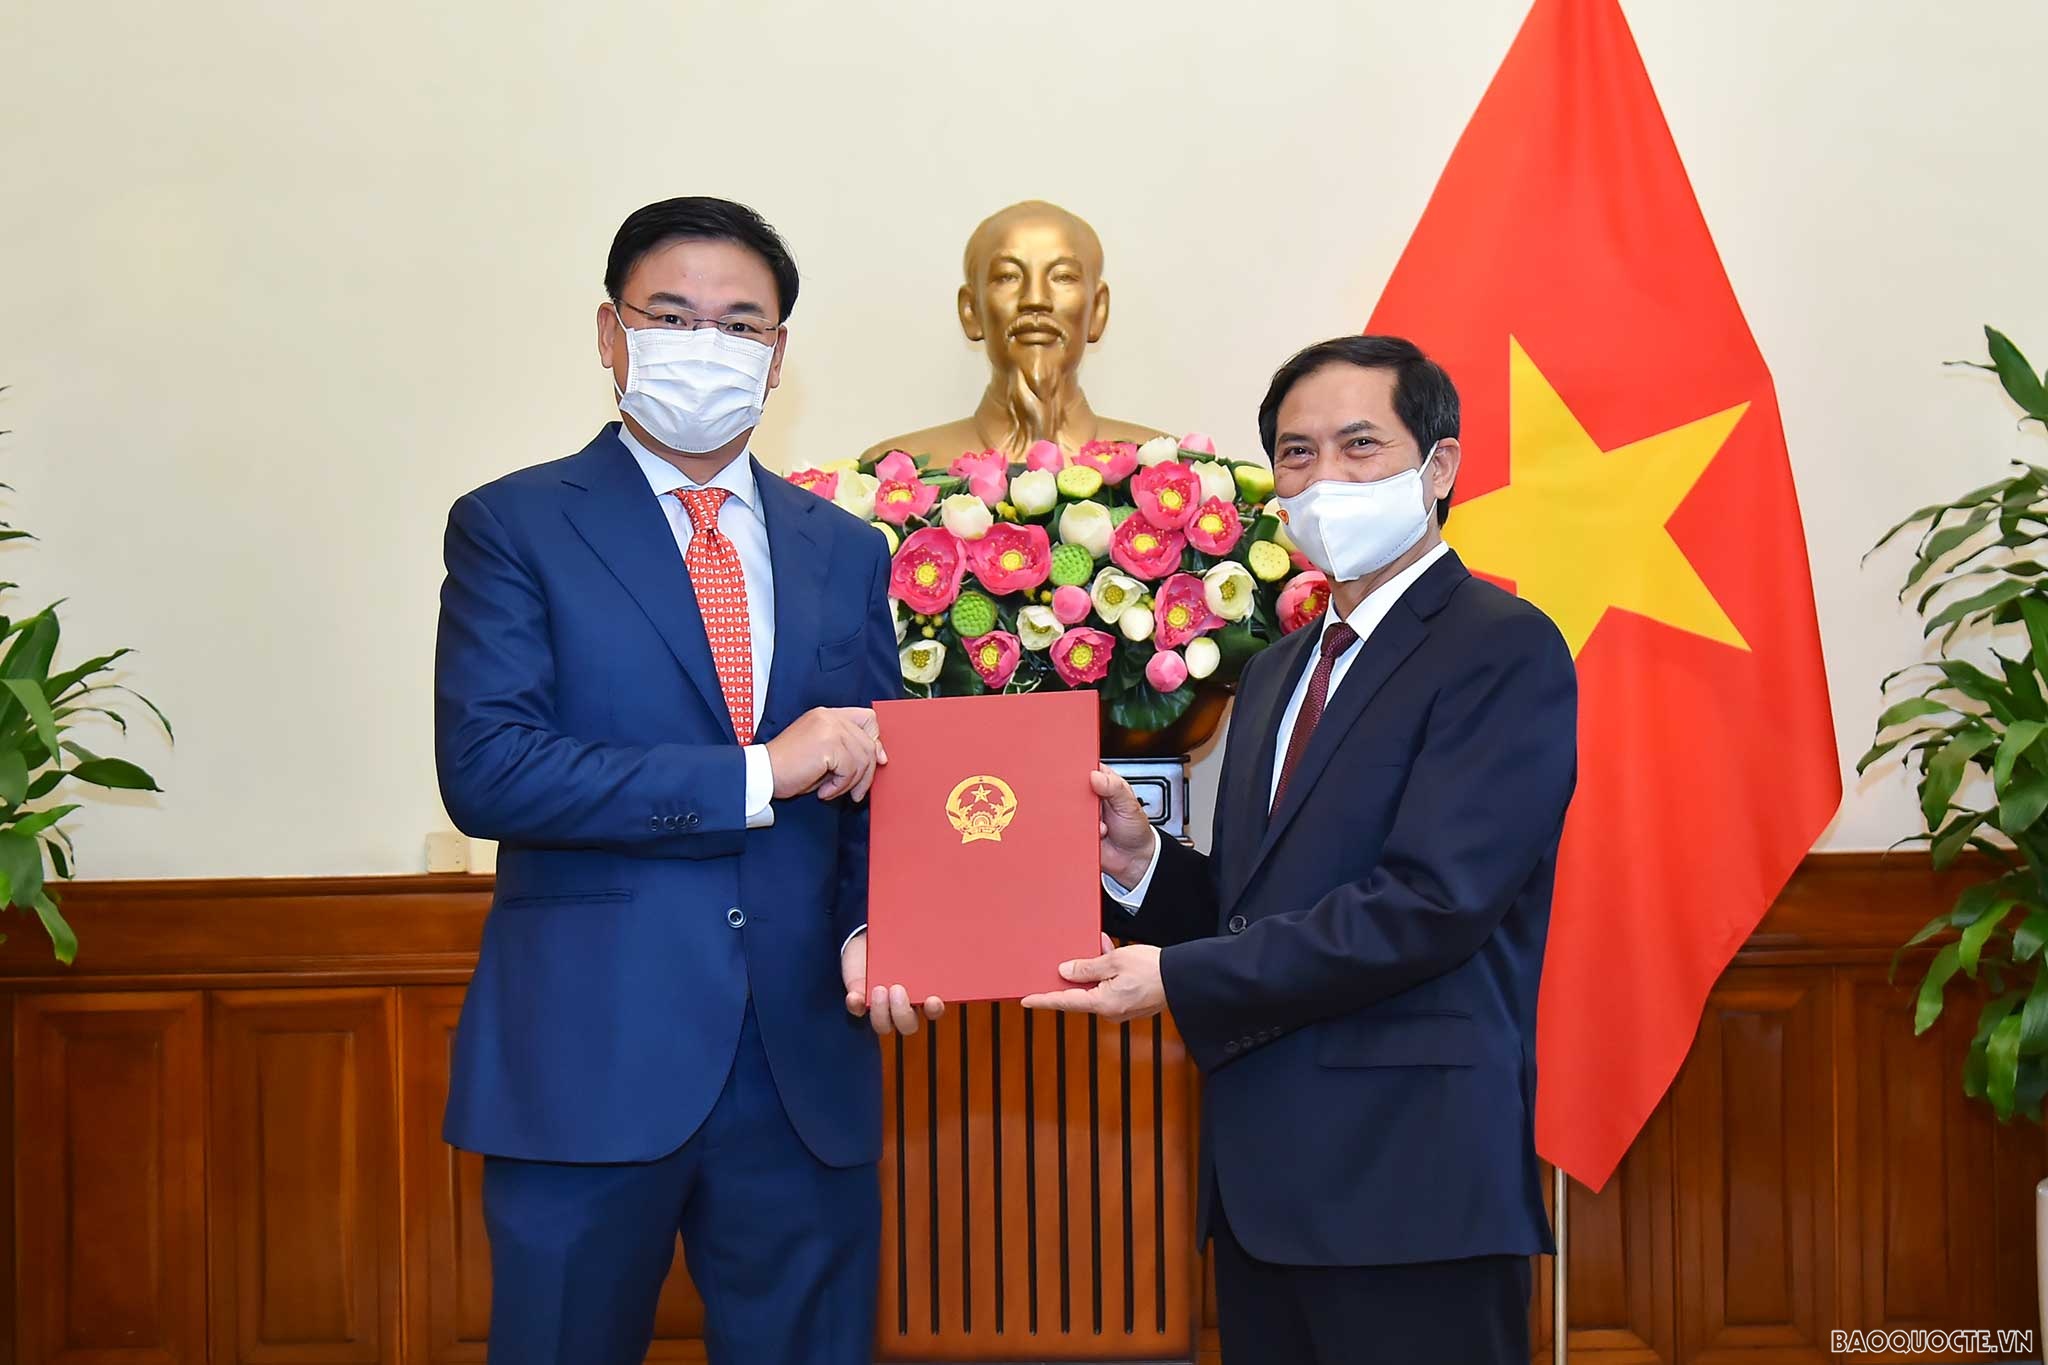 Ủy viên Trung ương Đảng, Bộ trưởng Ngoại giao Bùi Thanh Sơn đã trao quyết định bổ nhiệm Thứ trưởng Ngoại giao cho ông Phạm Quang Hiệu.